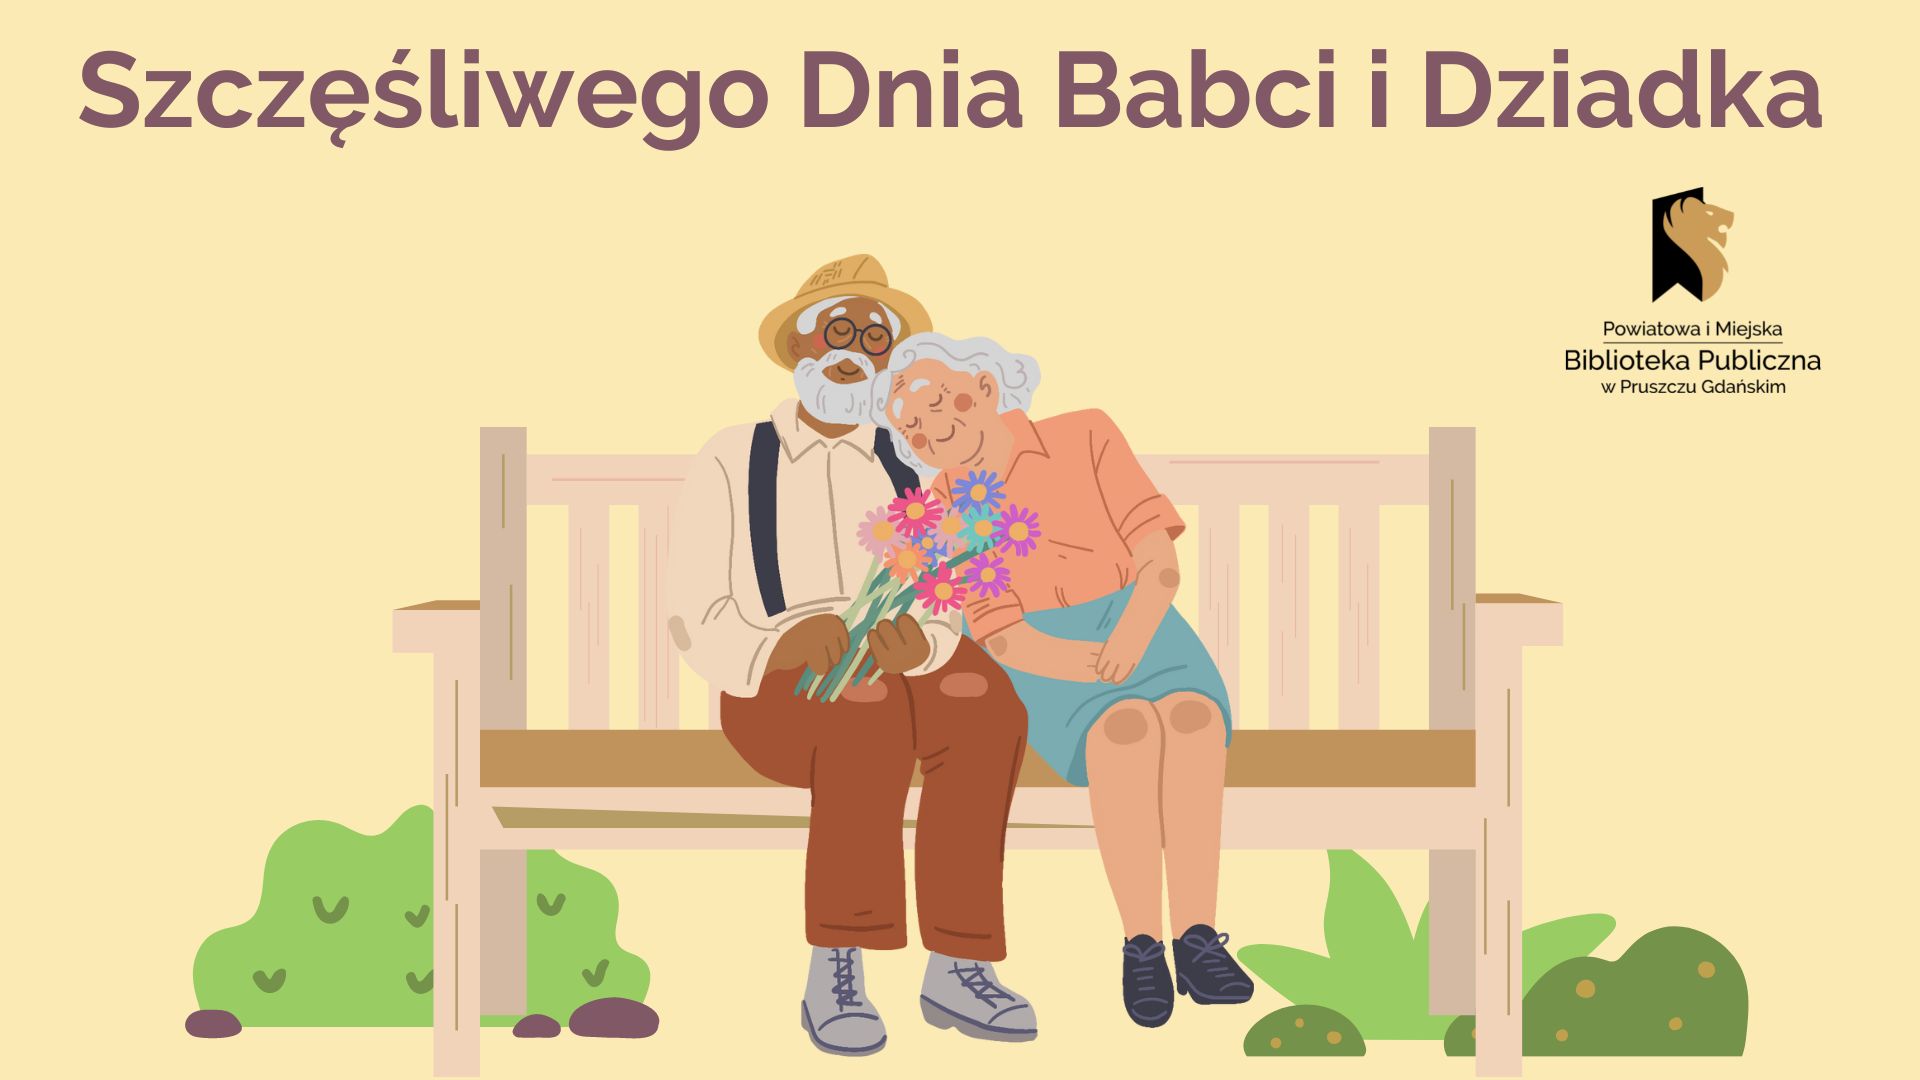 Napis: Szczęśliwego Dnia Babci i Dziadka, logo biblioteki oraz grafika przedstawiająca babcię i dziadka siedzących na ławce.